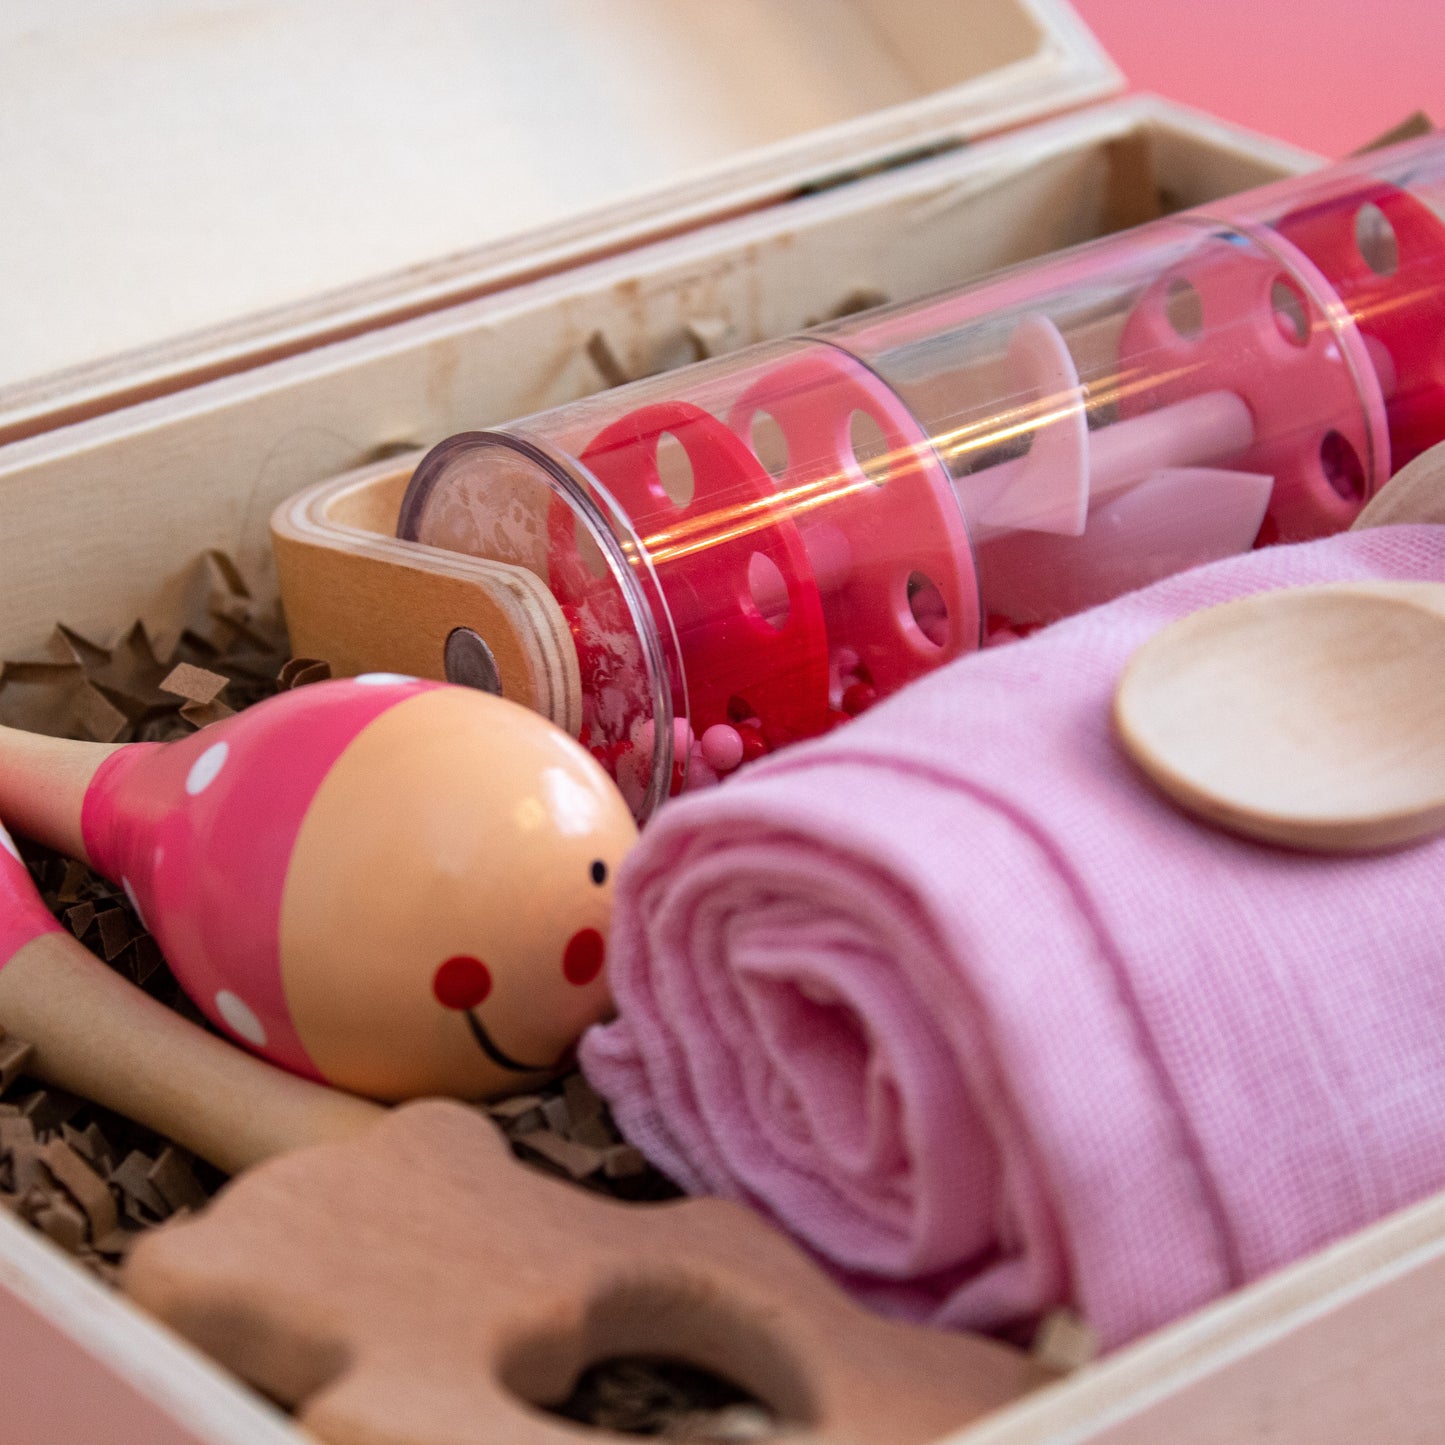 Prince and Princess 1 Personalised Wooden Keepsake Memory Box Pink or Blue  By Babba Box | Babba box.